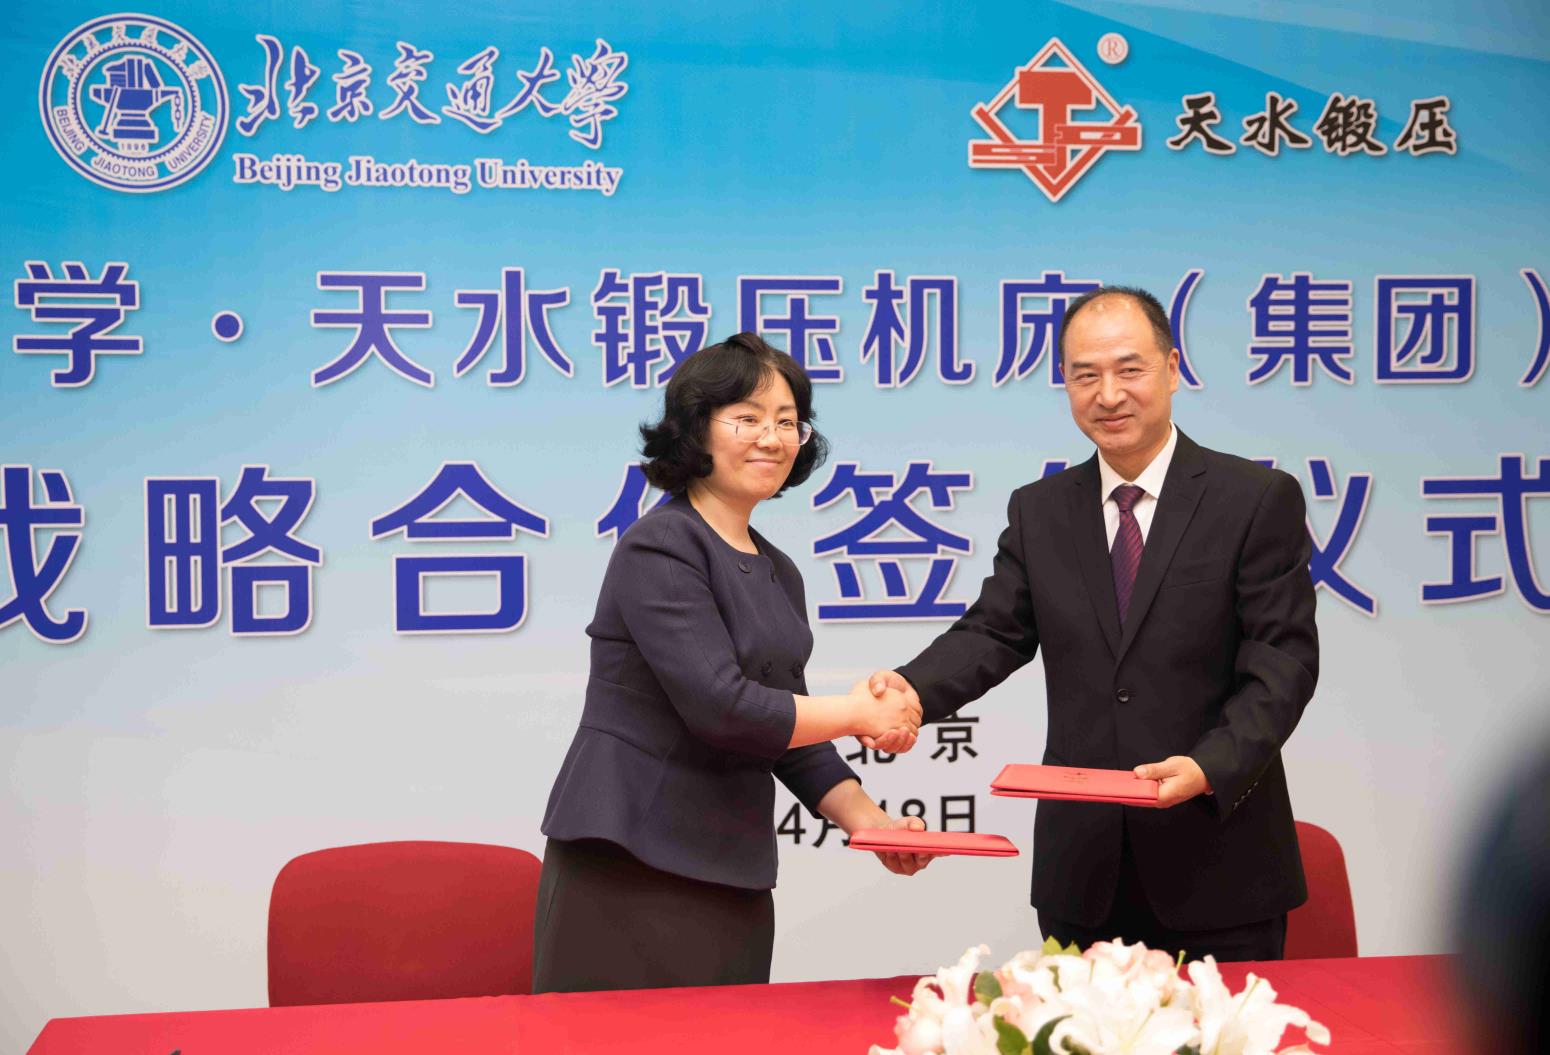 Ceremonia de firma estratégica con la Universidad Jiaotong de Beijing